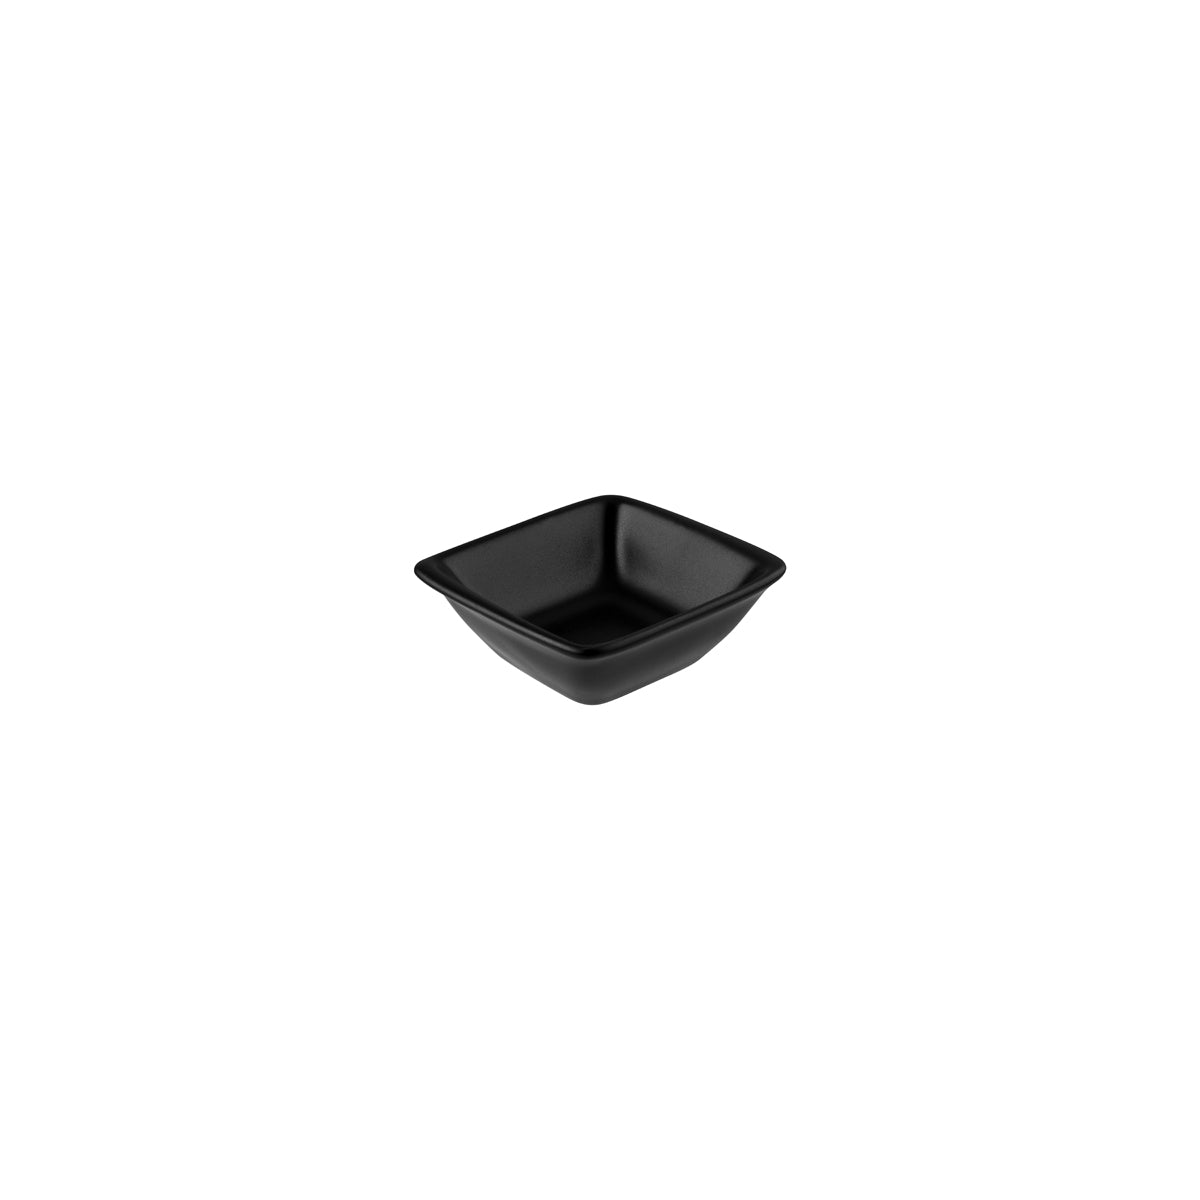 130740 Bonna Notte Black Rectangular Mini Bowl 80x85x30mm Tomkin Australia Hospitality Supplies